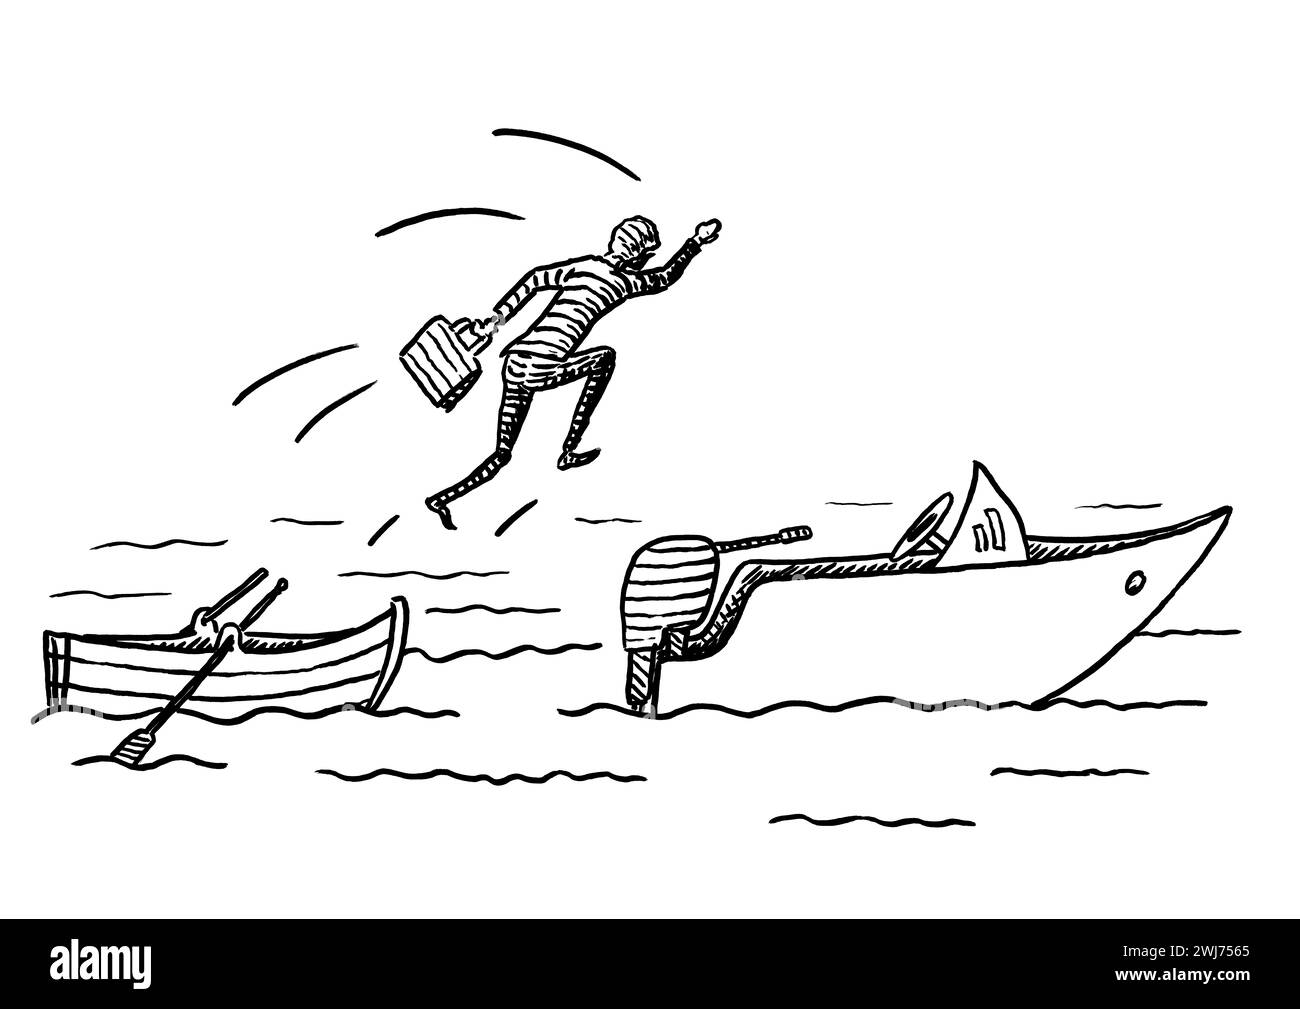 Schizzo disegnato a mano del manager che salta da una barca a remi su una barca a motore. Metafora per il cambiamento di carriera, per cogliere le opportunità di business, per l'imprenditoria Foto Stock